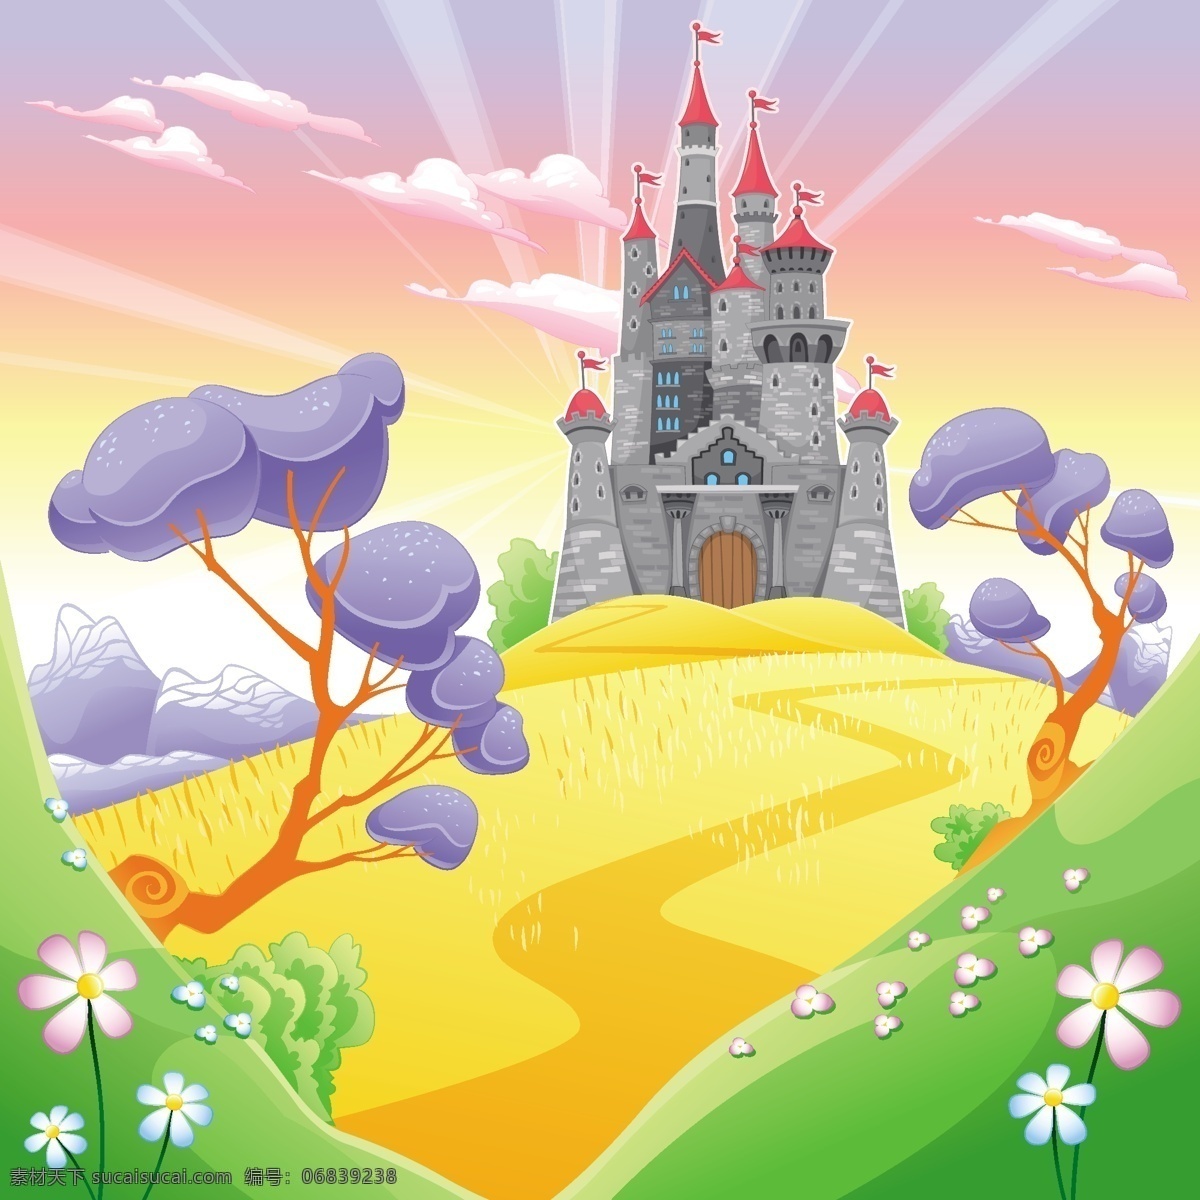 童话故事 城堡 矢量 矢量素材 设计素材 背景素材